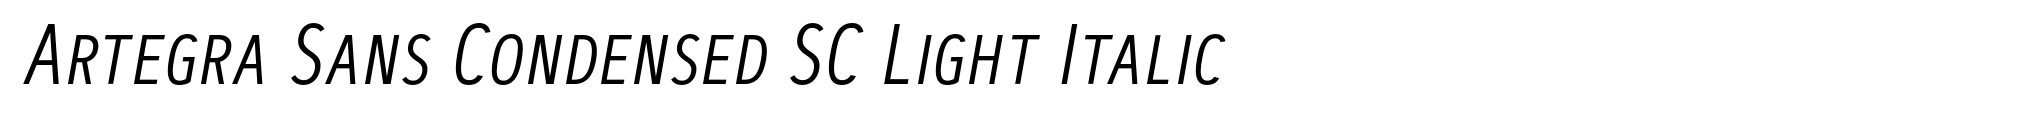 Artegra Sans Condensed SC Light Italic image